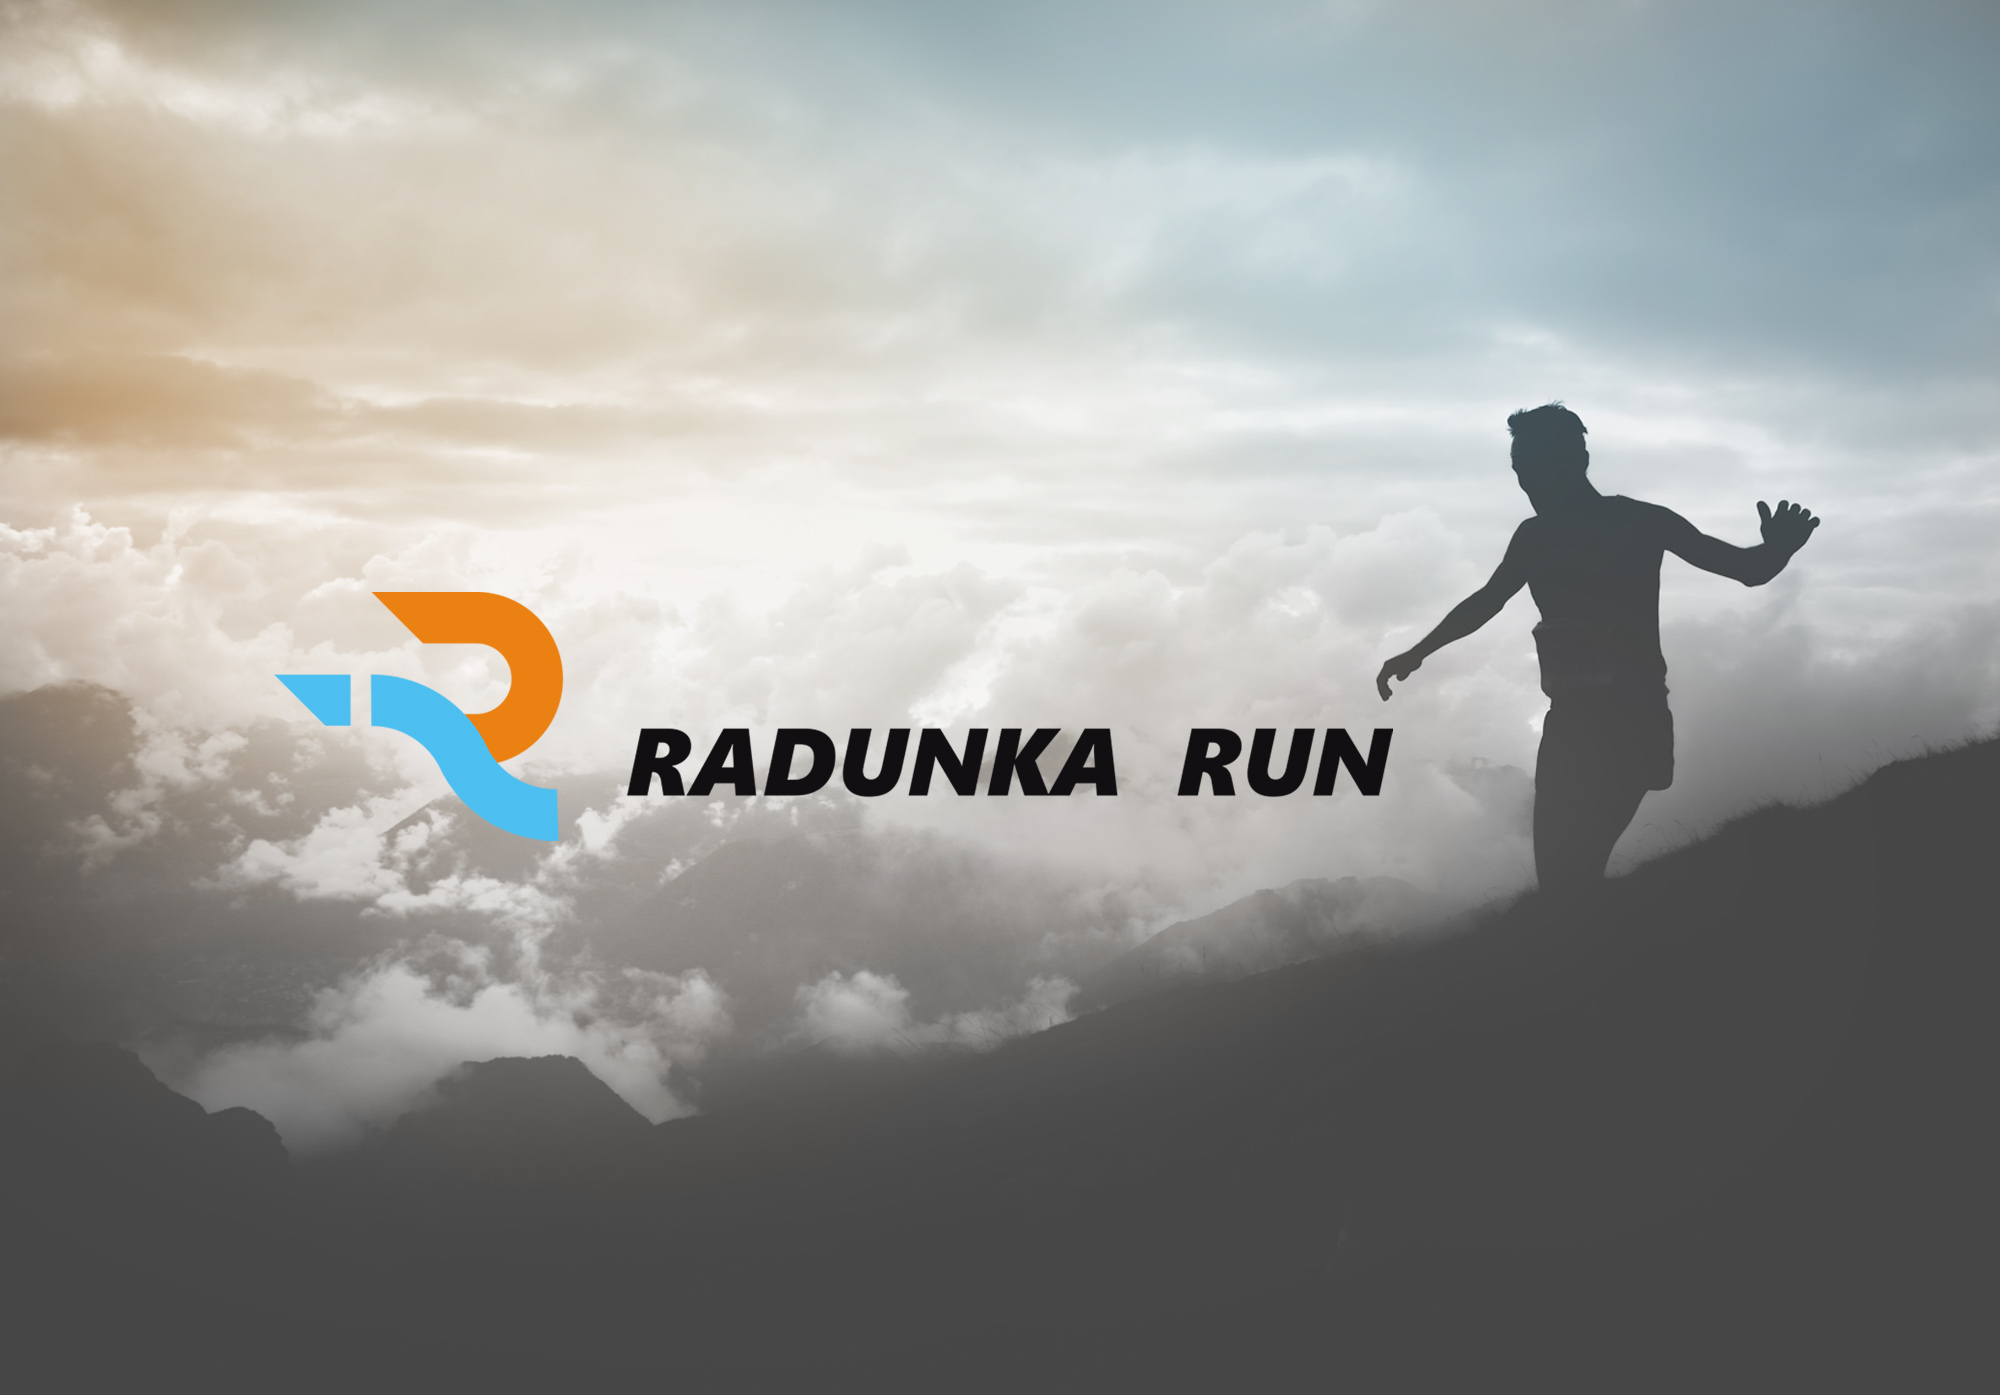 Radunka Run - kolbudy. Shadowart - projekt logo, koszulki, bluzy, plakaty, ulotki, dyplomy.